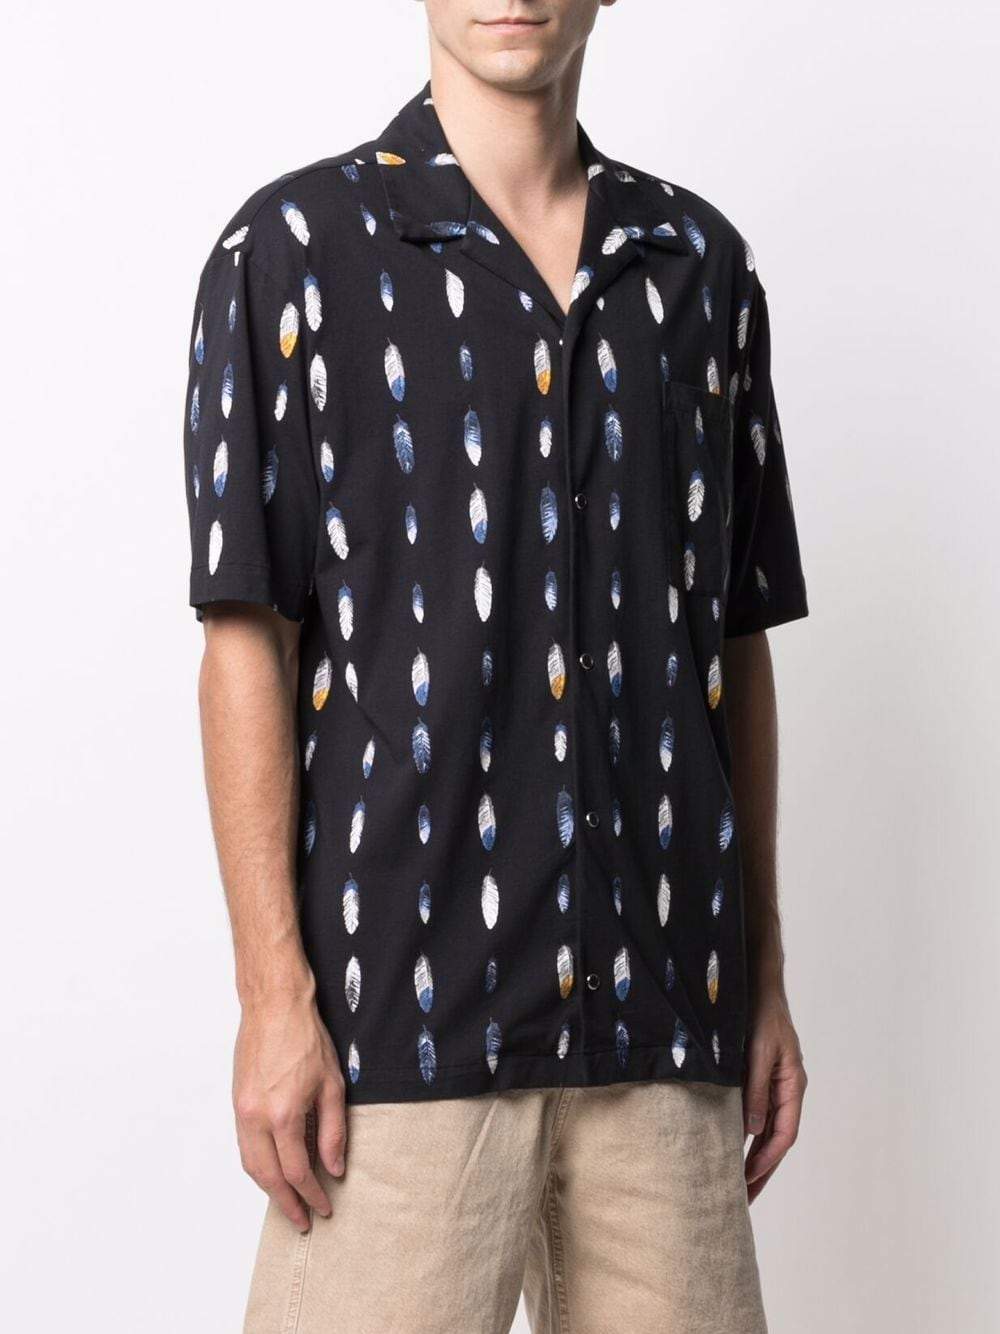 MARCELO BURLON Feather Print Shirt Black - MAISONDEFASHION.COM